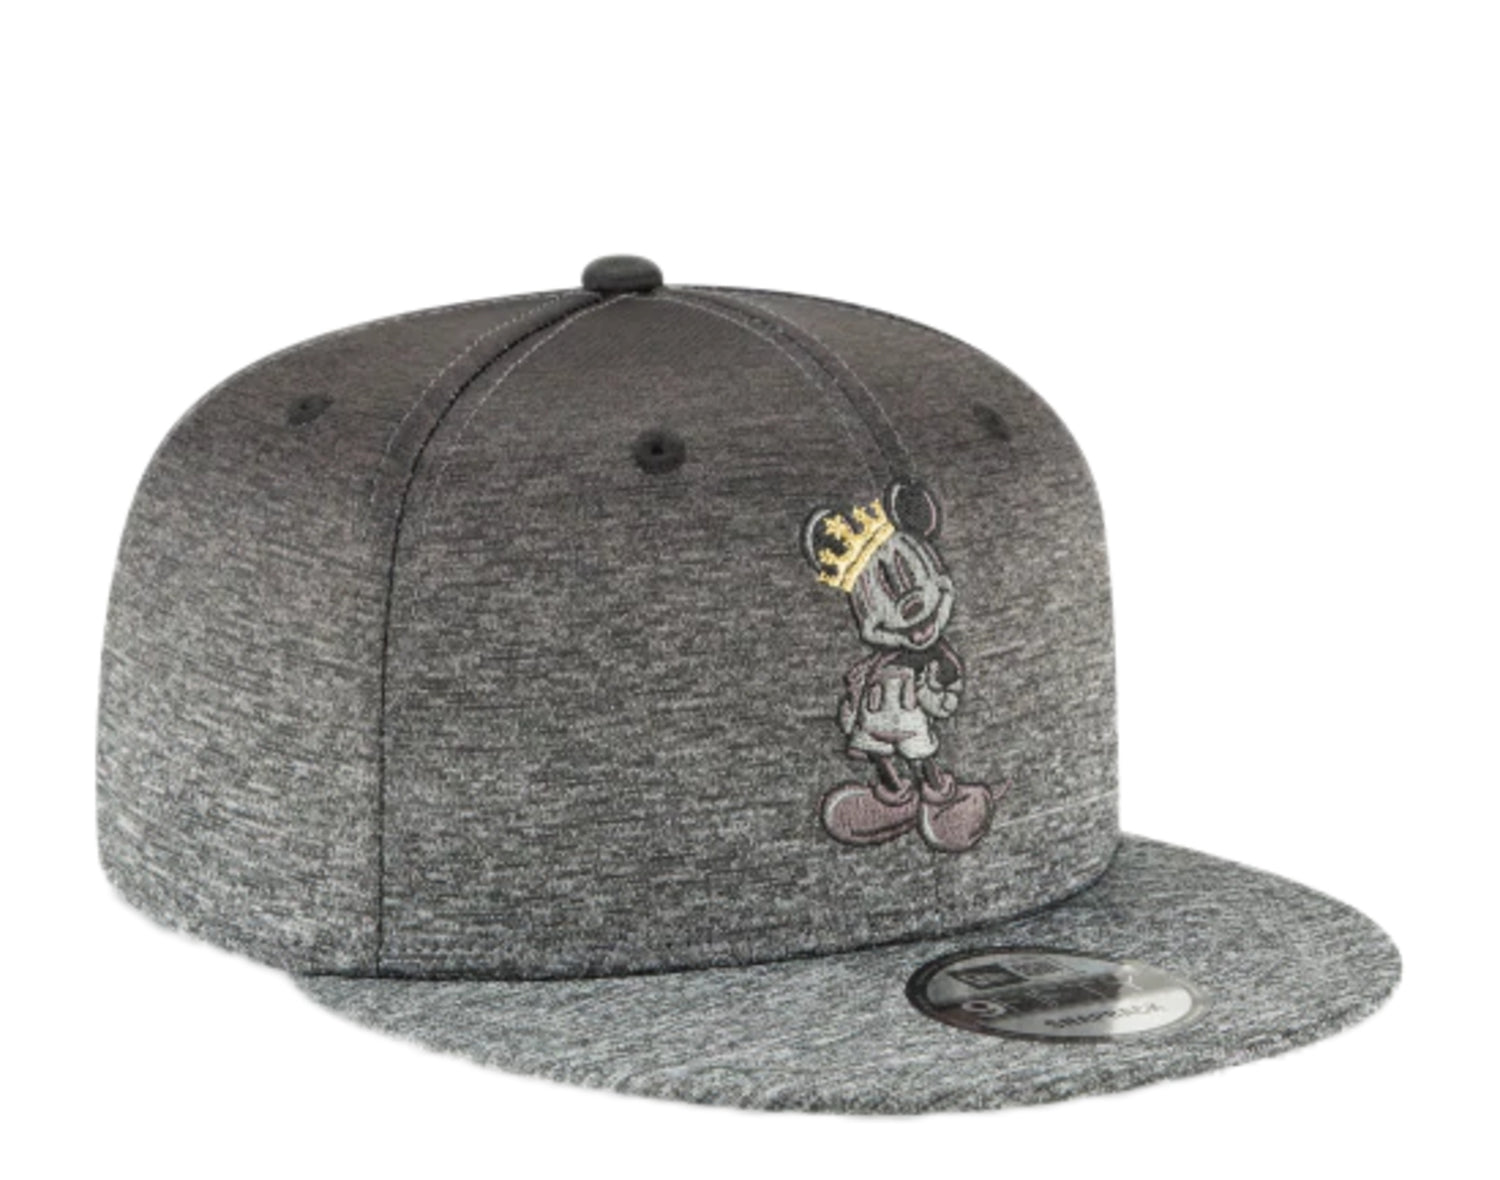 New Era x Disney 9Fifty Mickey Mouse Shadow Fade Snapback Hat